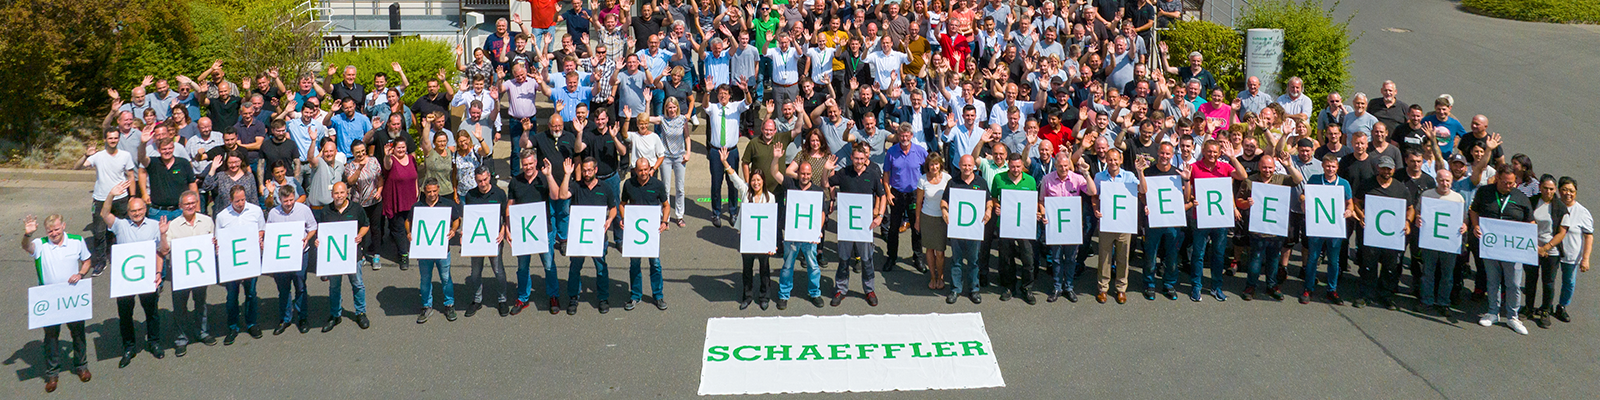 Schaeffler employees hold signs